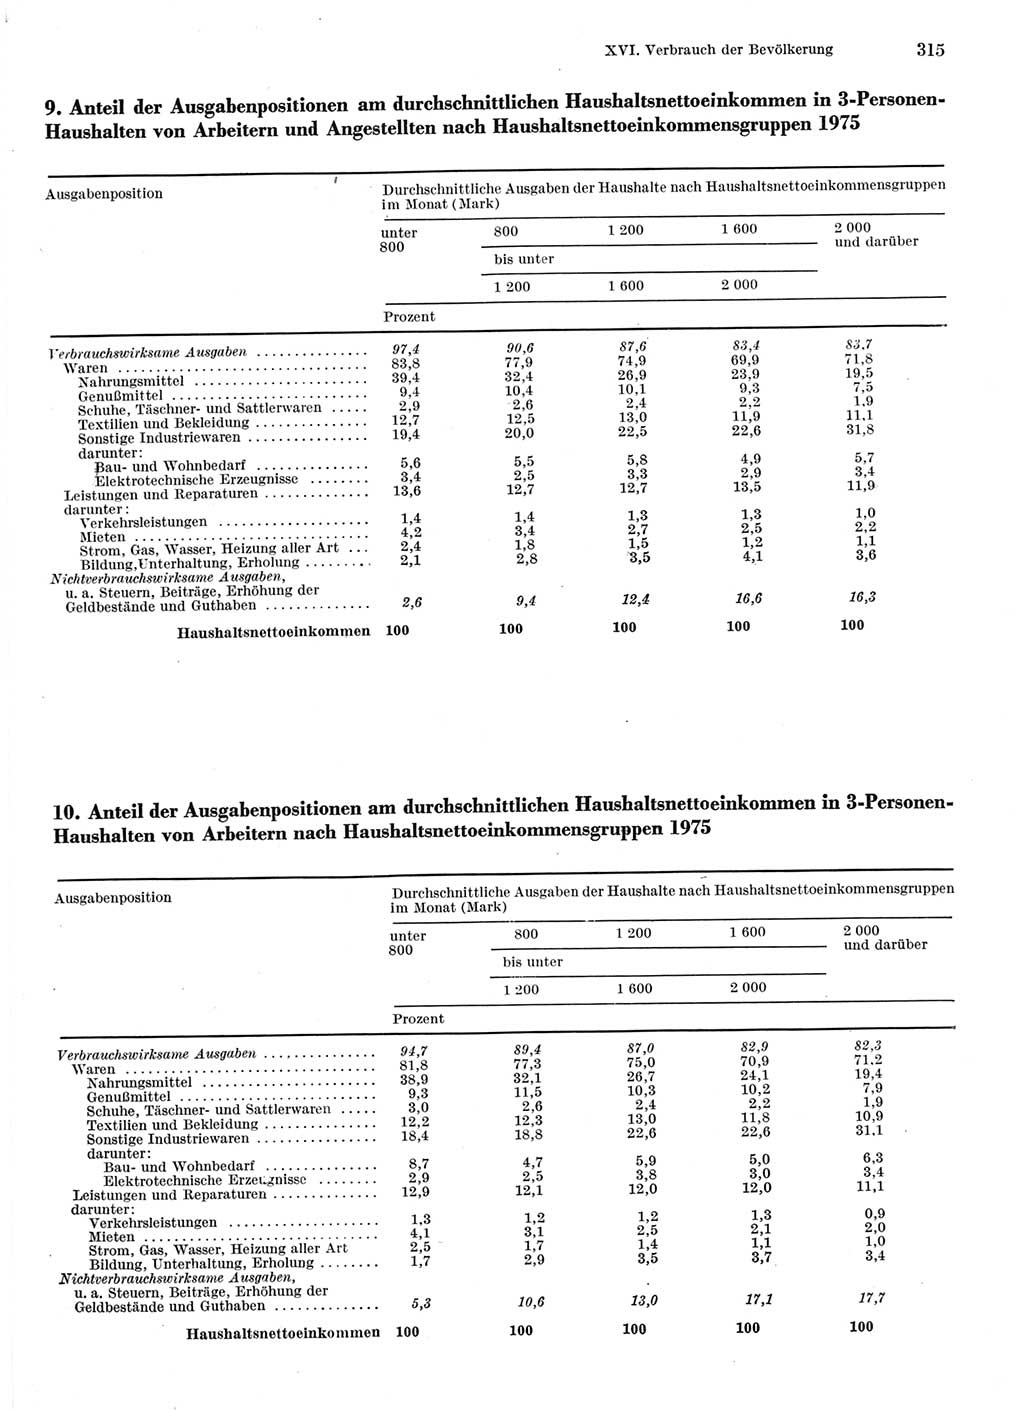 Statistisches Jahrbuch der Deutschen Demokratischen Republik (DDR) 1976, Seite 315 (Stat. Jb. DDR 1976, S. 315)